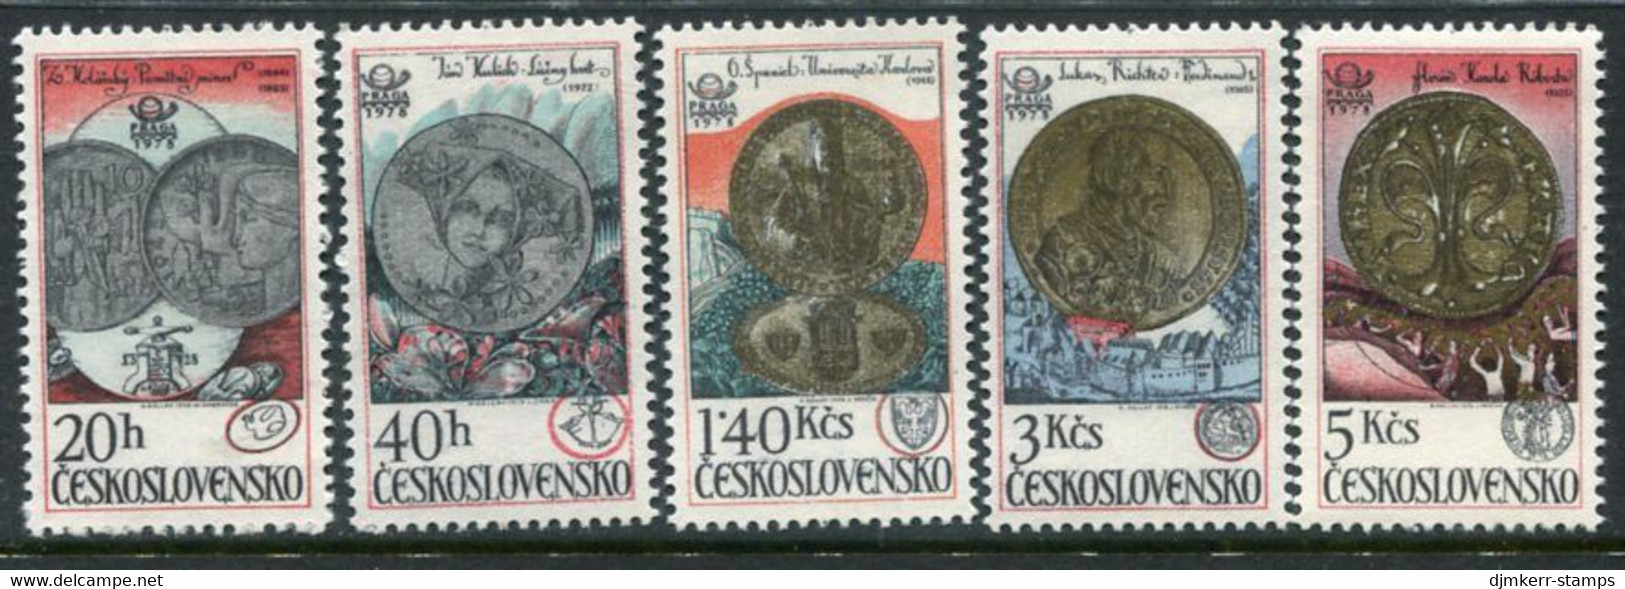 CZECHOSLOVAKIA 1978 Coins From Kremnica Mint MNH / **.   Michel 2427-31 - Ungebraucht